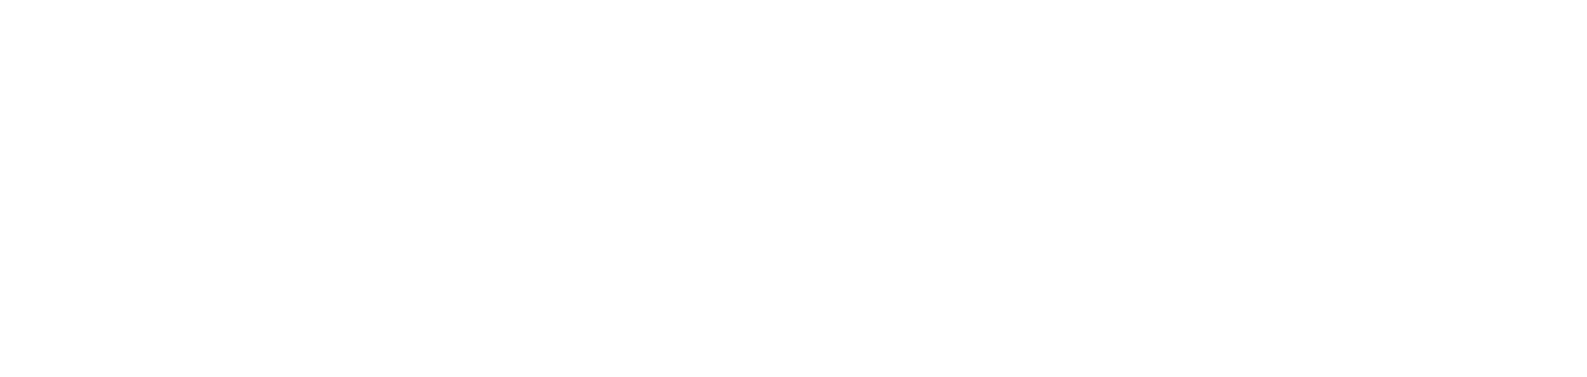 Snap logo large for dark backgrounds (transparent PNG)